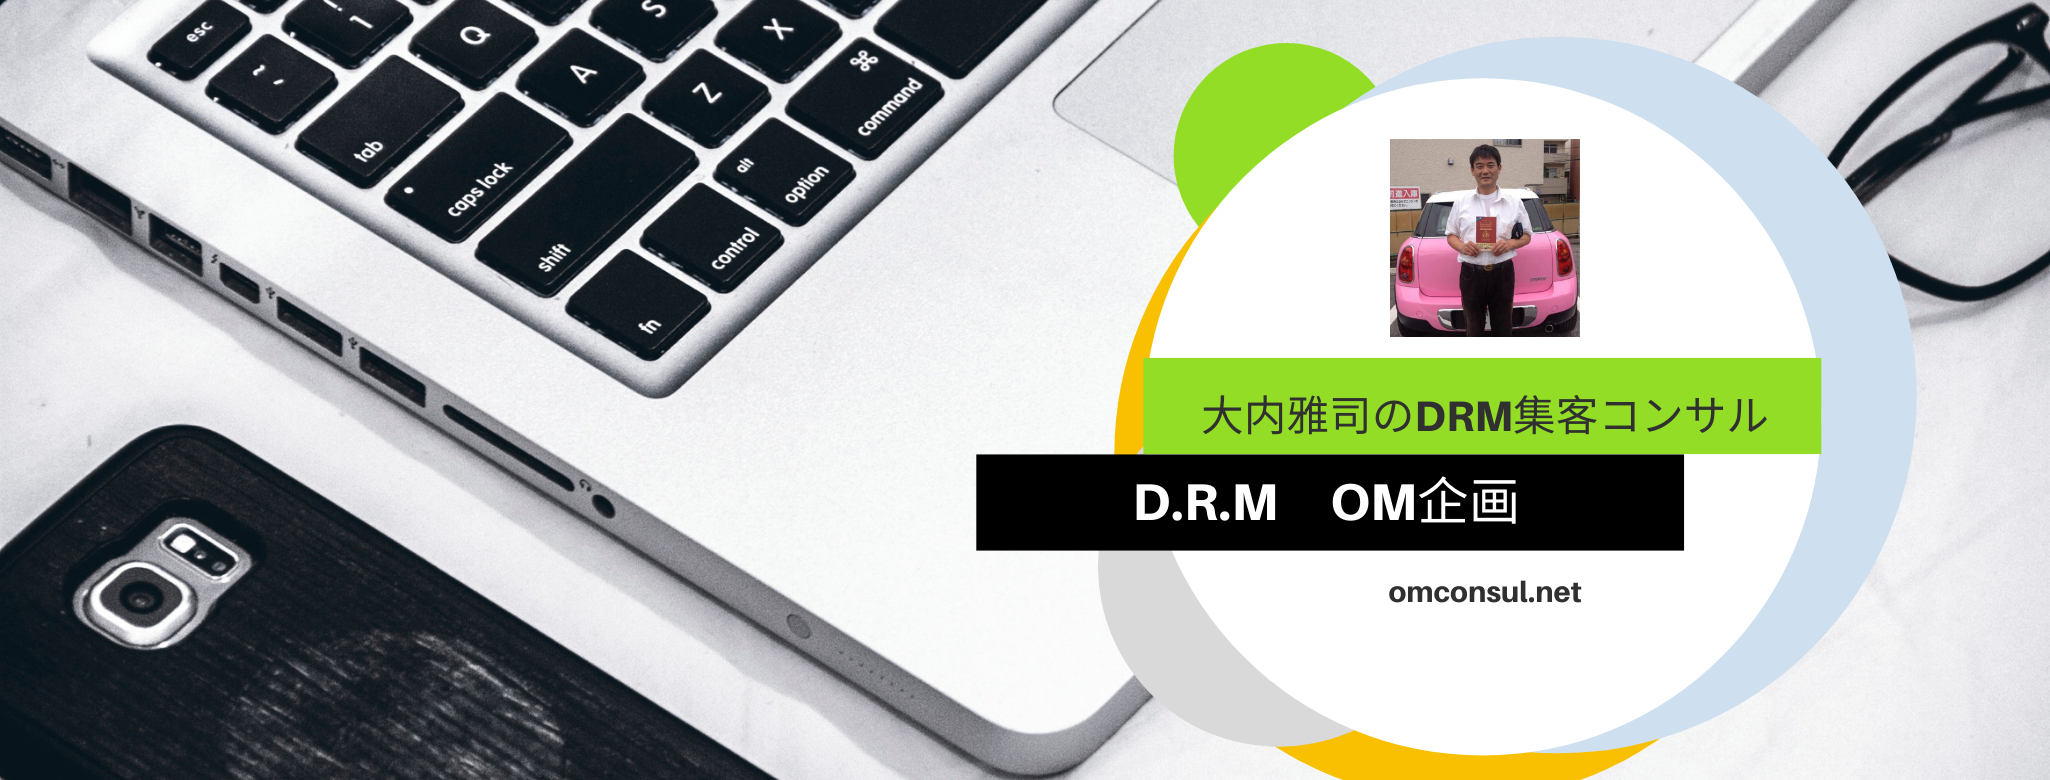 大内雅司のDRM（ダイレクトレスポンスマーケティング）集客コンサルサービス・OM企画